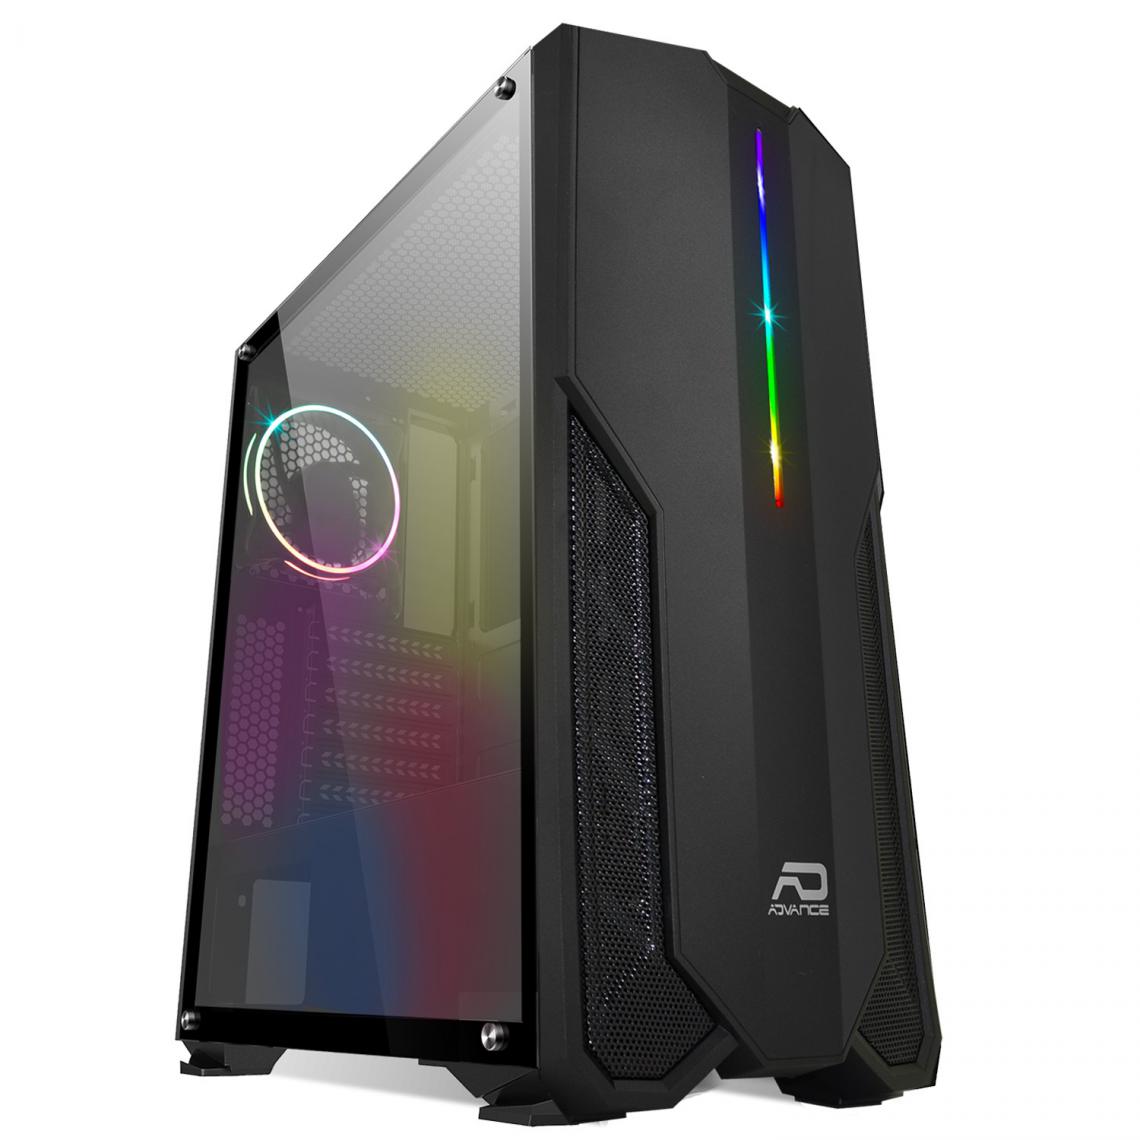 Advance - Boitier PHOENIX RGB ADVANCE PC Tour Gaming ATX - ITX -mATX 2 ventilateurs rétro-éclairage RGB - Boitier PC